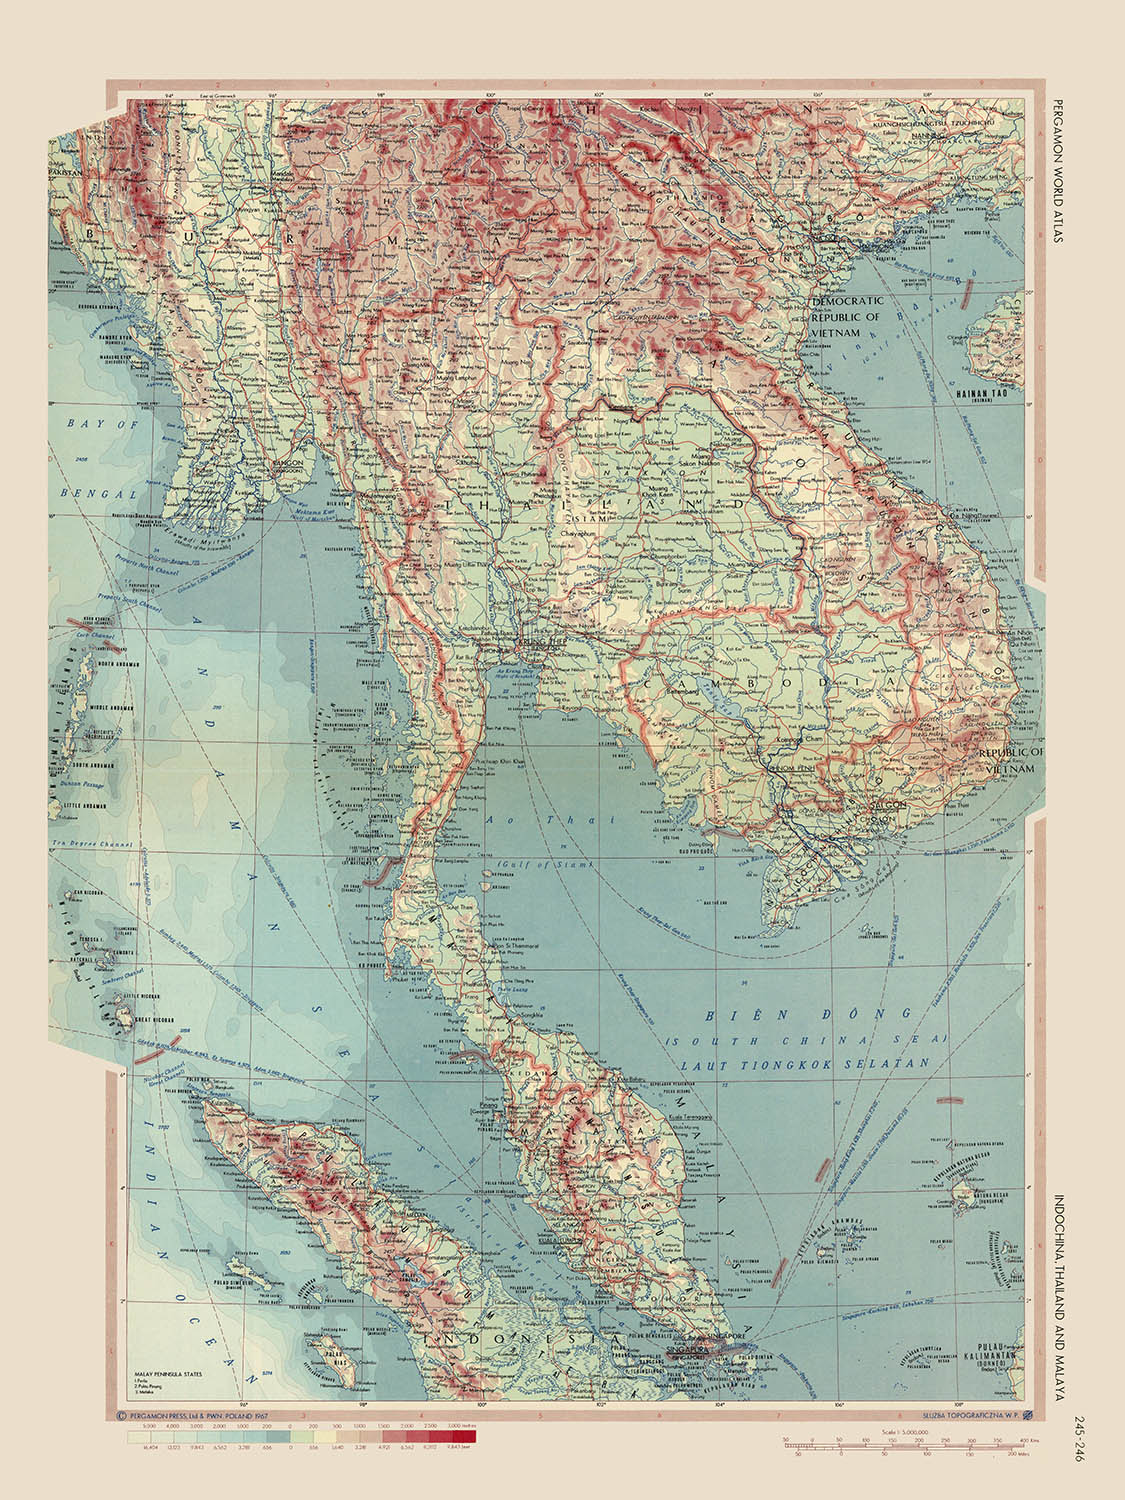 Ancienne carte de l'Indonésie, de la Thaïlande et de la Malaisie, 1967 : Jakarta, Bangkok, Kuala Lumpur, guerre du Vietnam, carte politique et physique détaillée